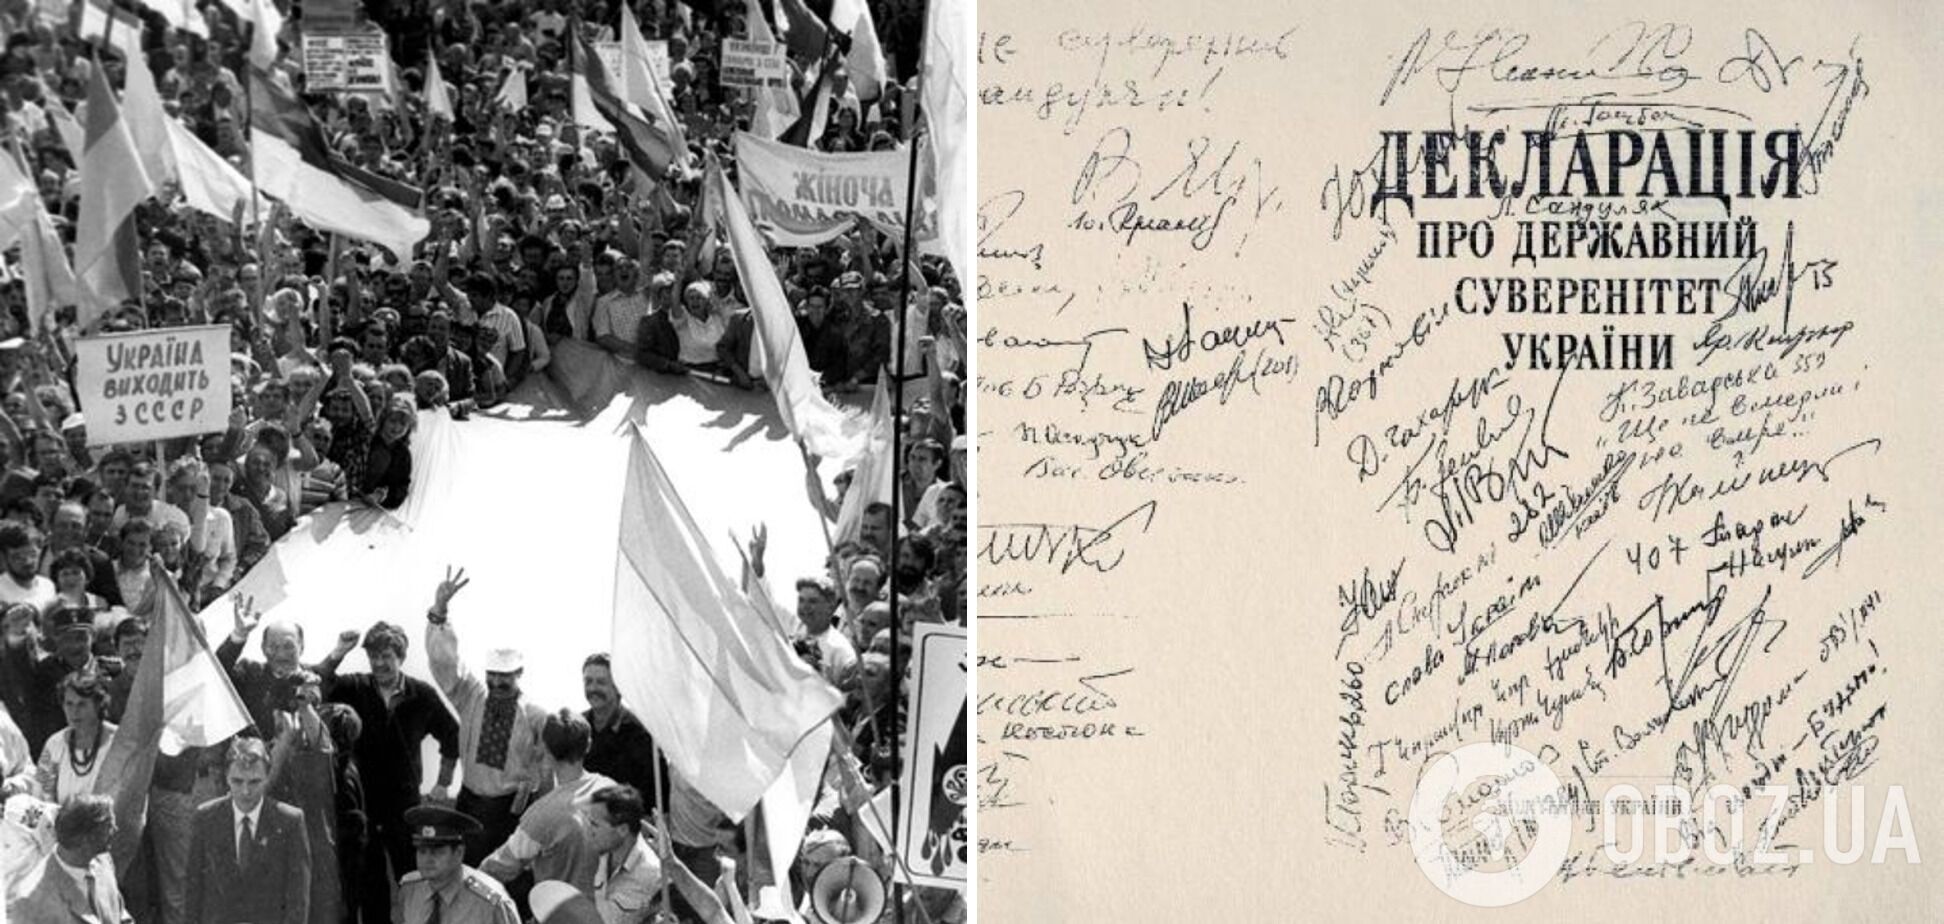 32 года назад была принята Декларация о государственном суверенитете Украины